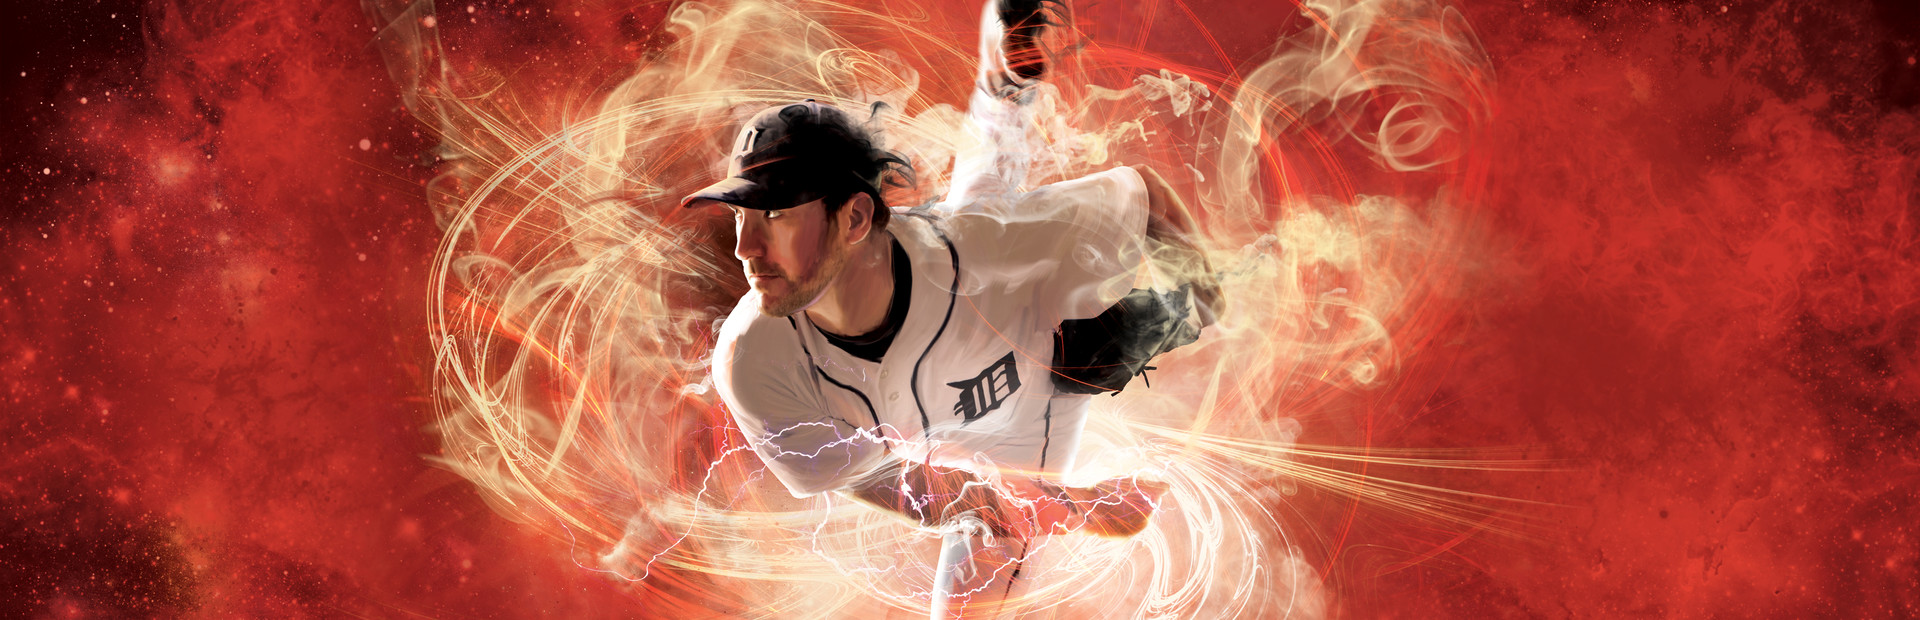 MLB 2K12 cover image